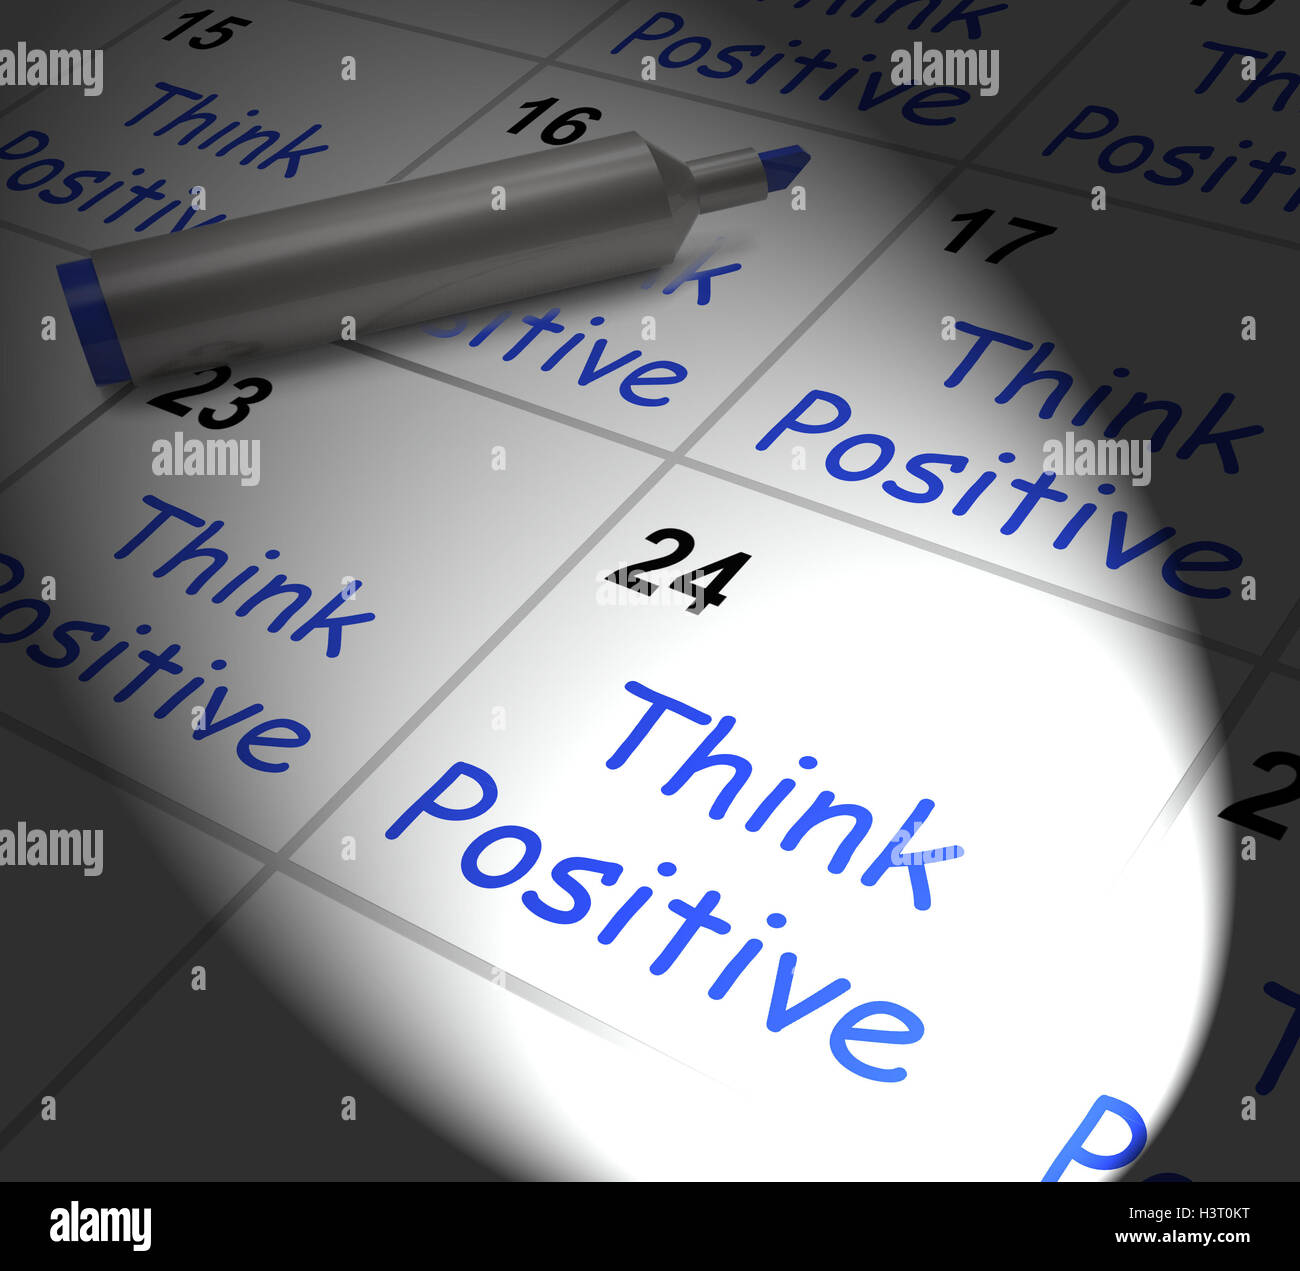 Pensez positif Calendrier affiche optimisme et bonne attitude Banque D'Images